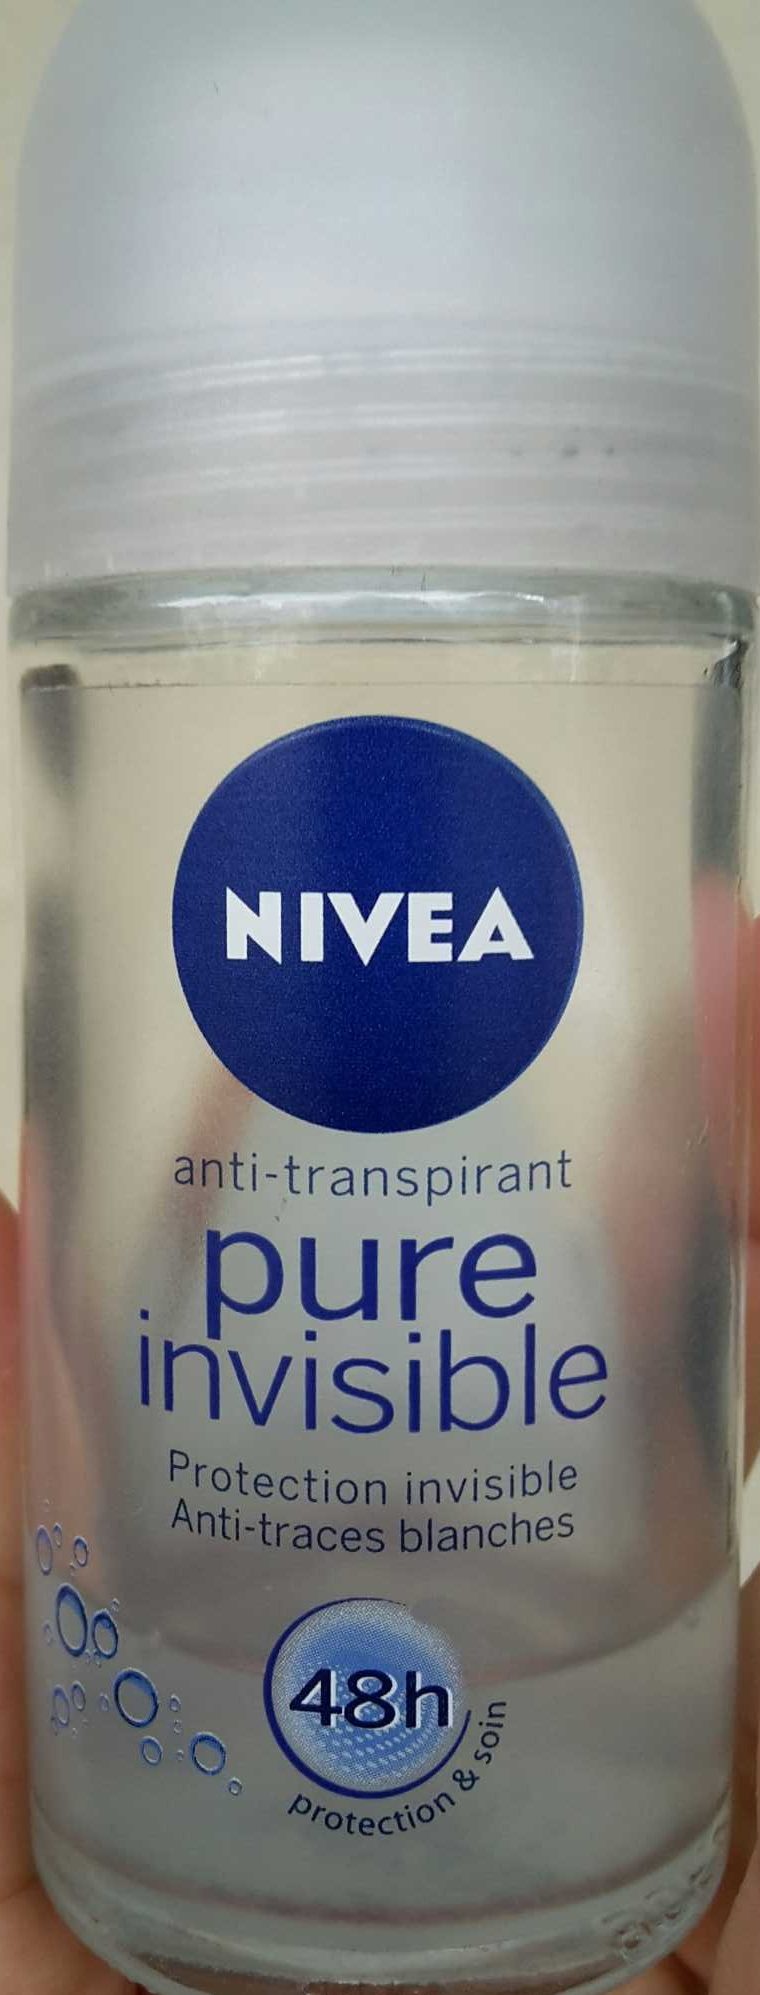 Anti-transpirant pure invisible - Produto - fr